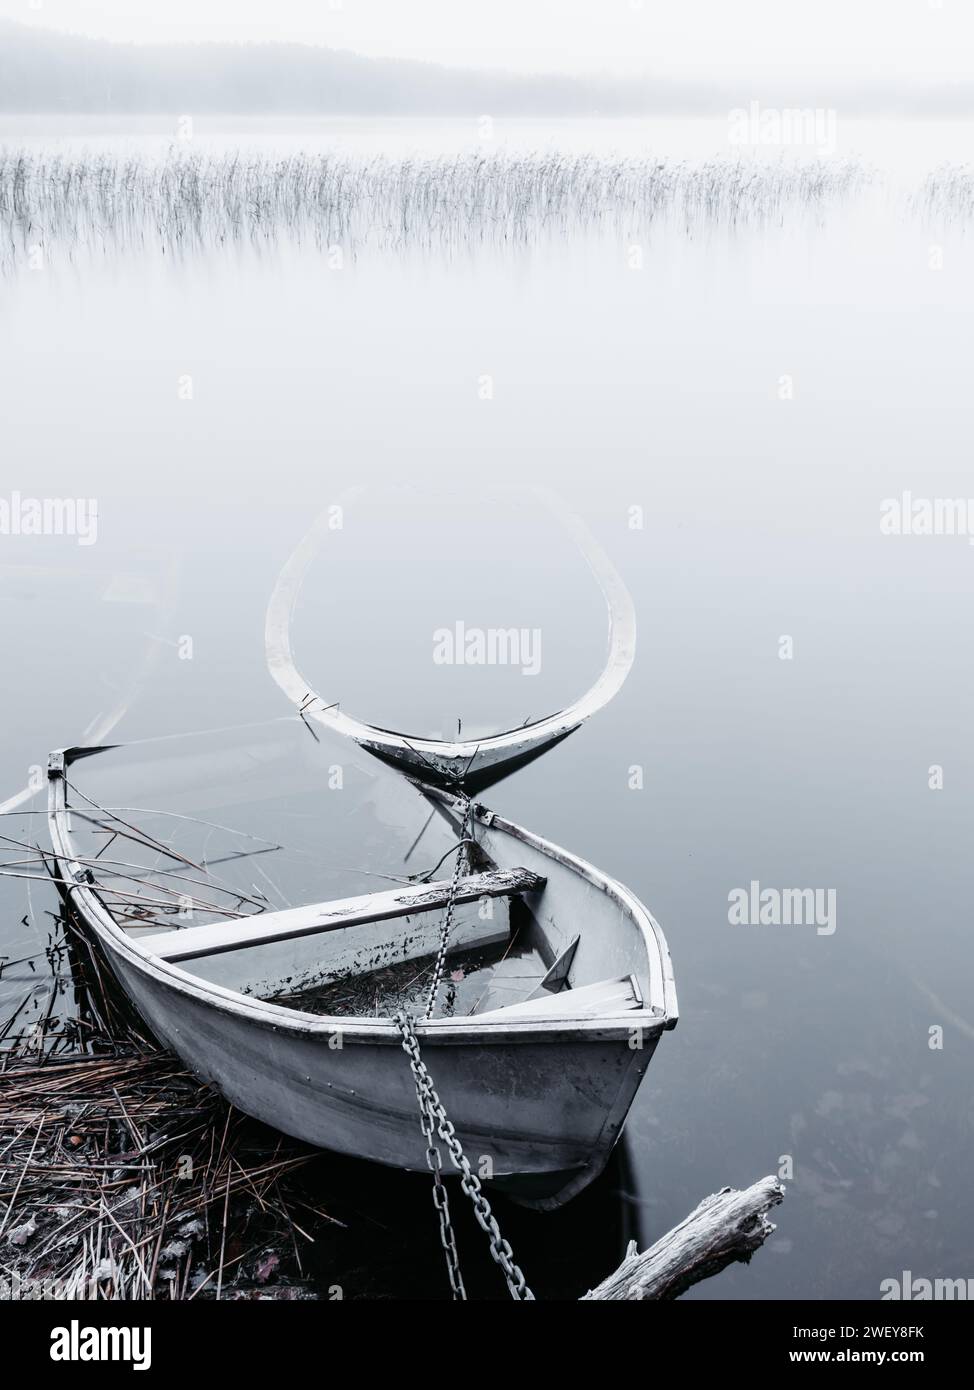 Zwei einsame Boote ruhen auf dem ruhigen Wasser eines Sees, umgeben von dem ruhigen Nebel eines frühen morgens. Stockfoto